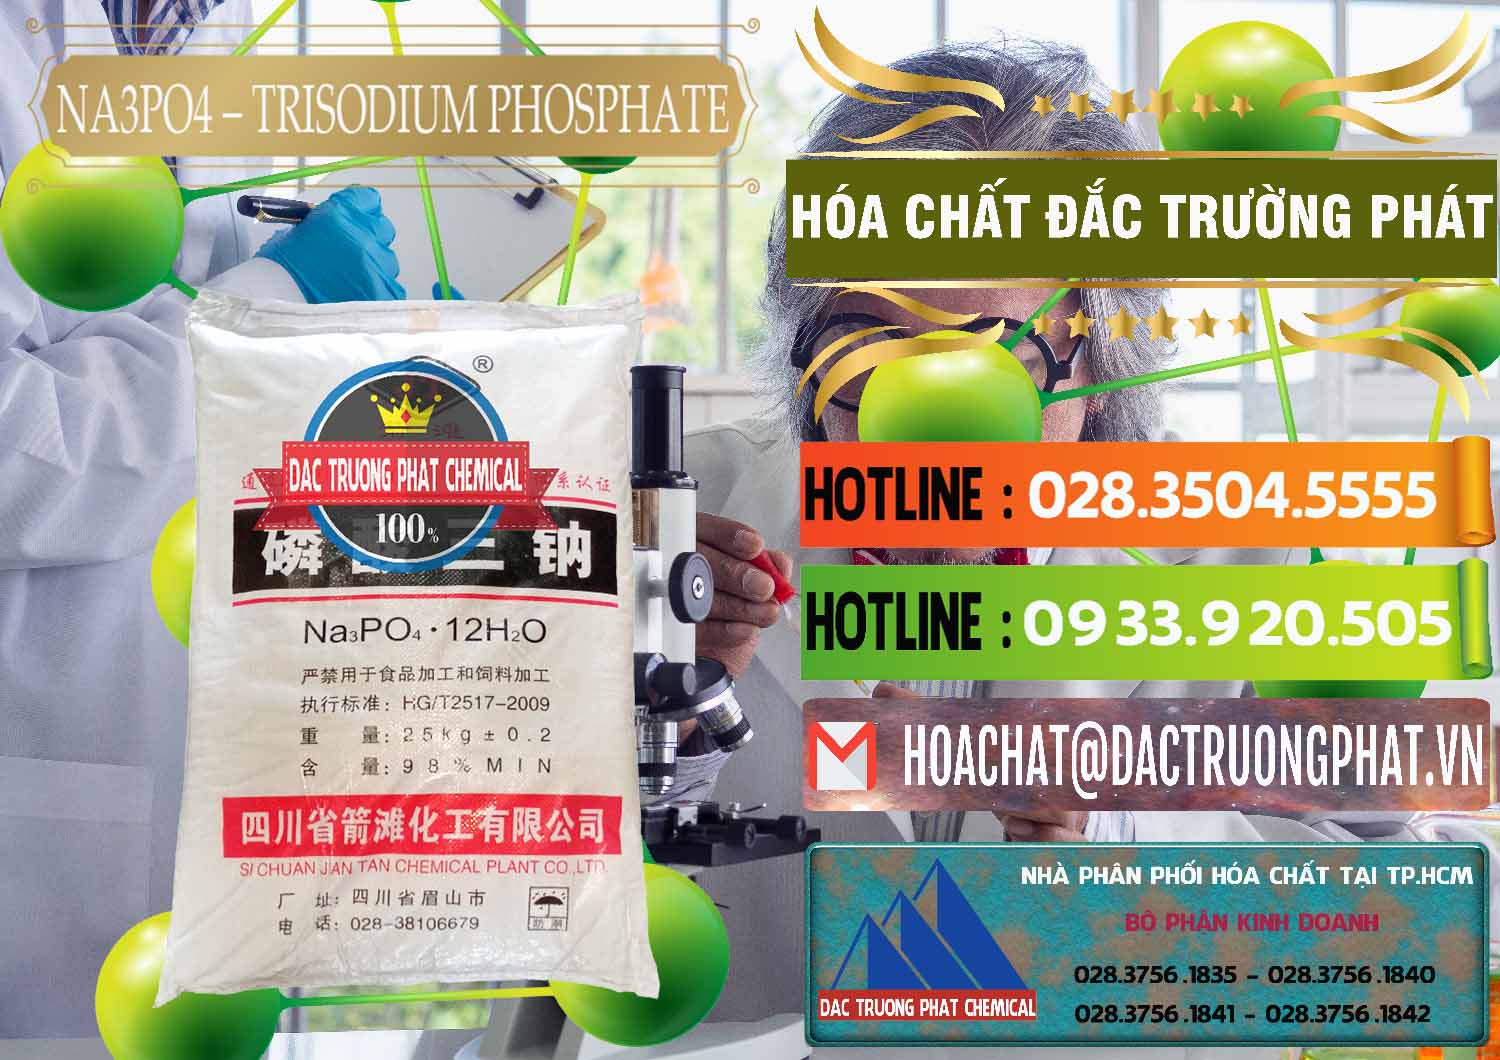 Công ty chuyên cung cấp và bán Na3PO4 – Trisodium Phosphate Trung Quốc China JT - 0102 - Nơi phân phối ( cung cấp ) hóa chất tại TP.HCM - cungcaphoachat.com.vn